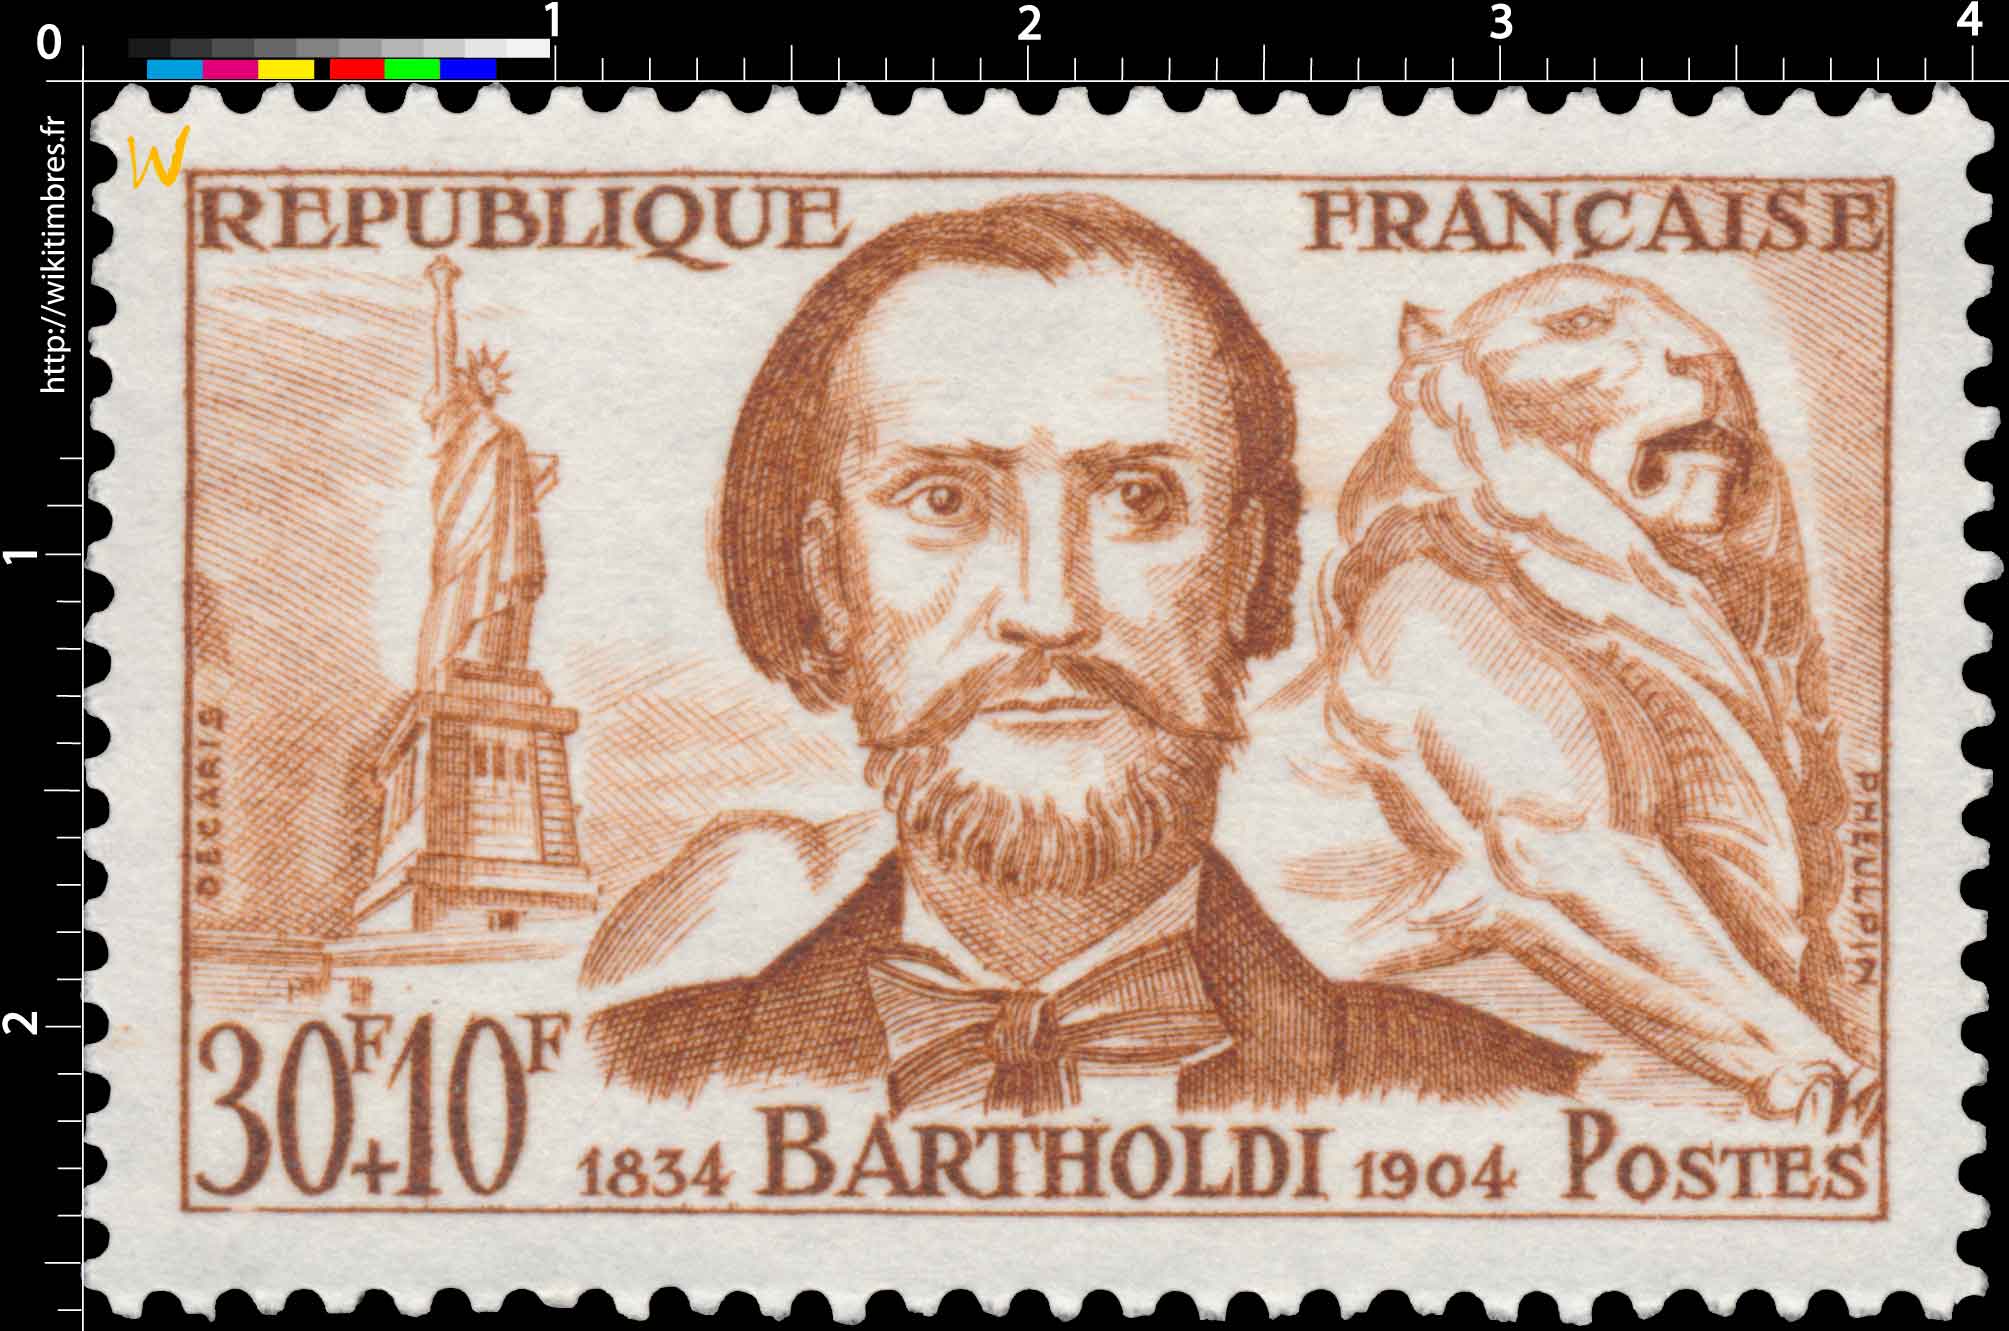 BARTHOLDI 1834-1904